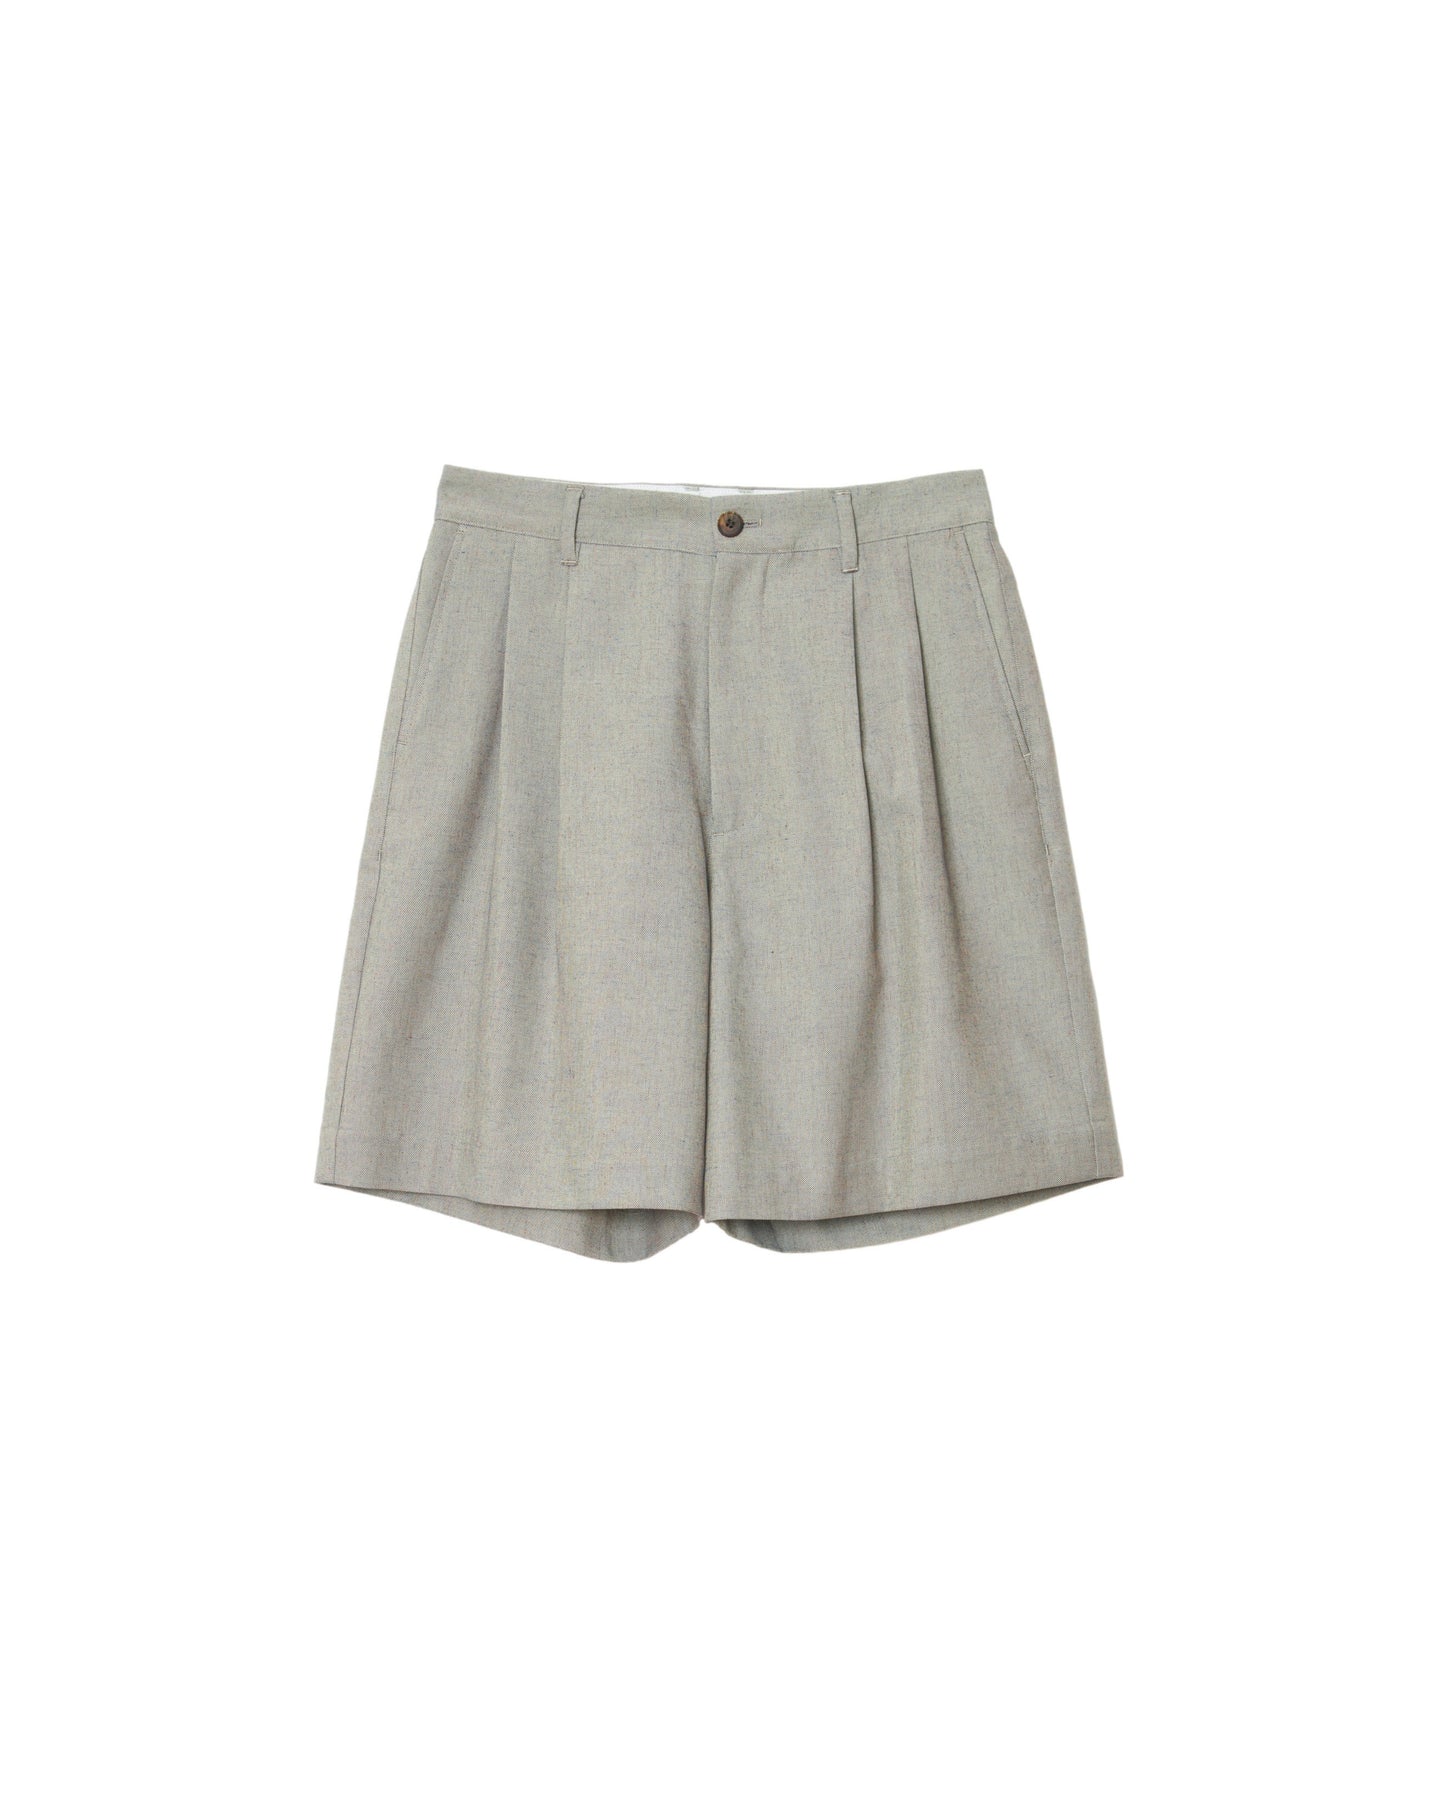 MATSUFUJI / Short Trousers "mix"